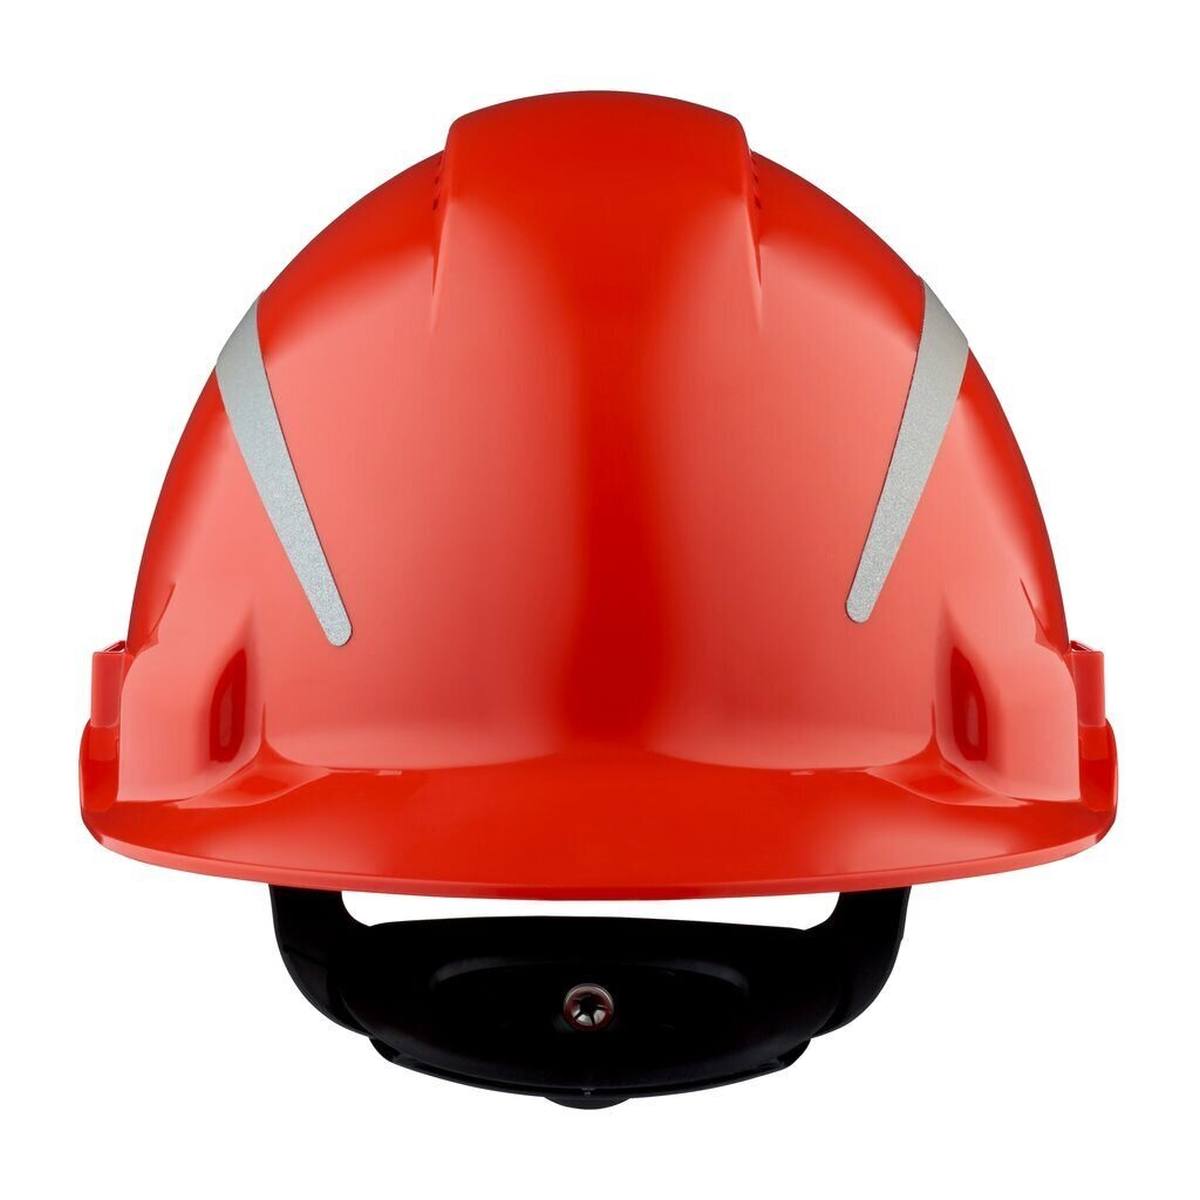 elmetto di sicurezza 3M G3000 con indicatore UV, rosso, ABS, chiusura a cricchetto ventilata, fascia antisudore in plastica, adesivo riflettente